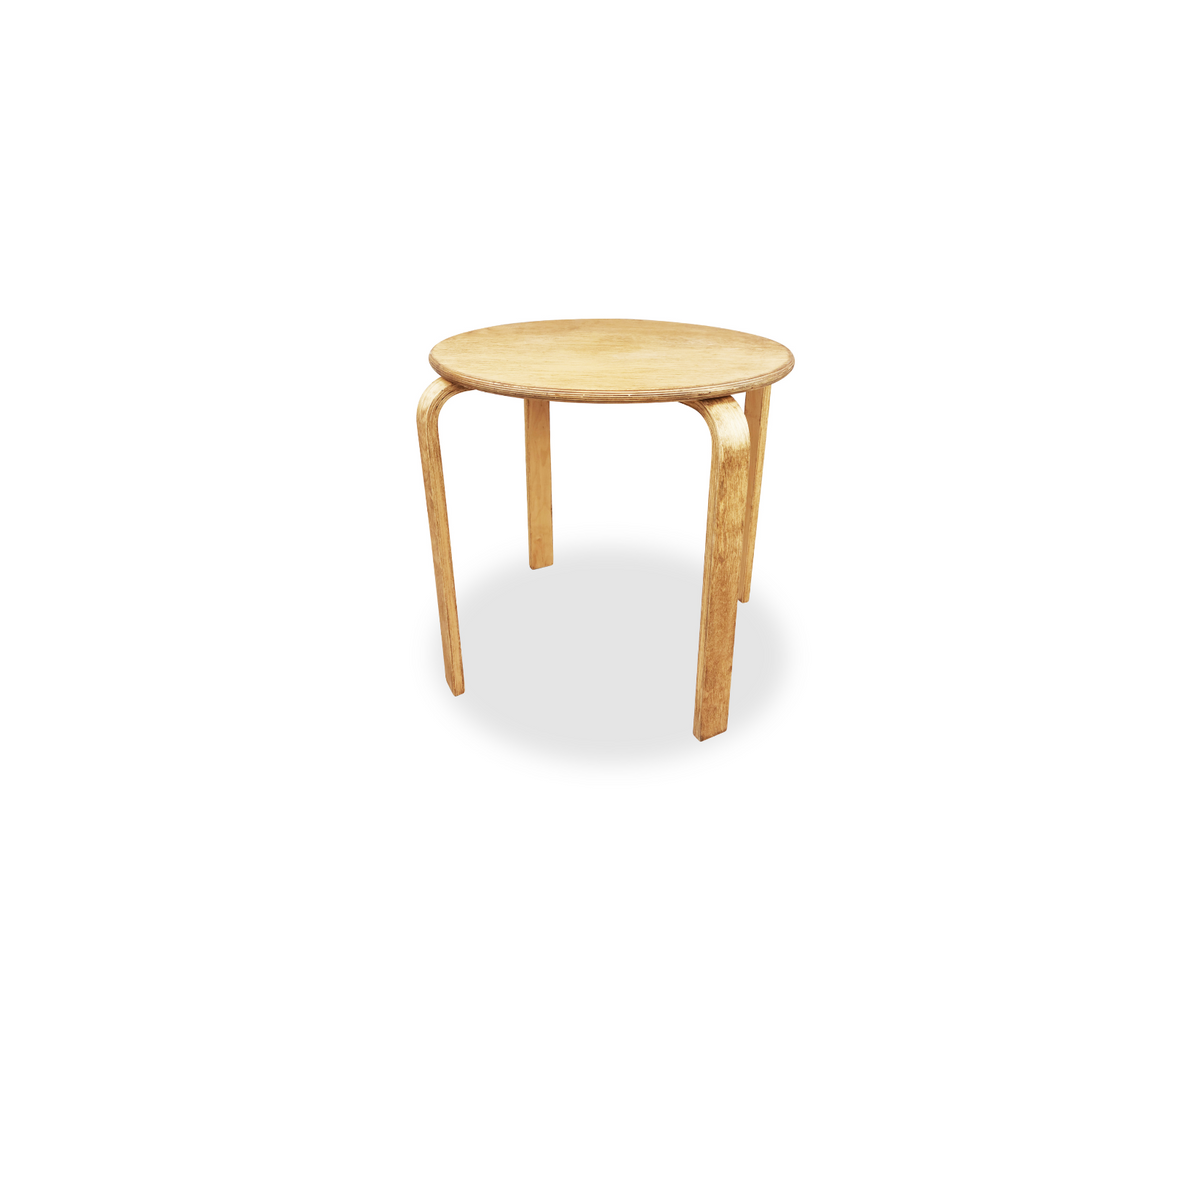 Vintage Alvar Aalto style side table.